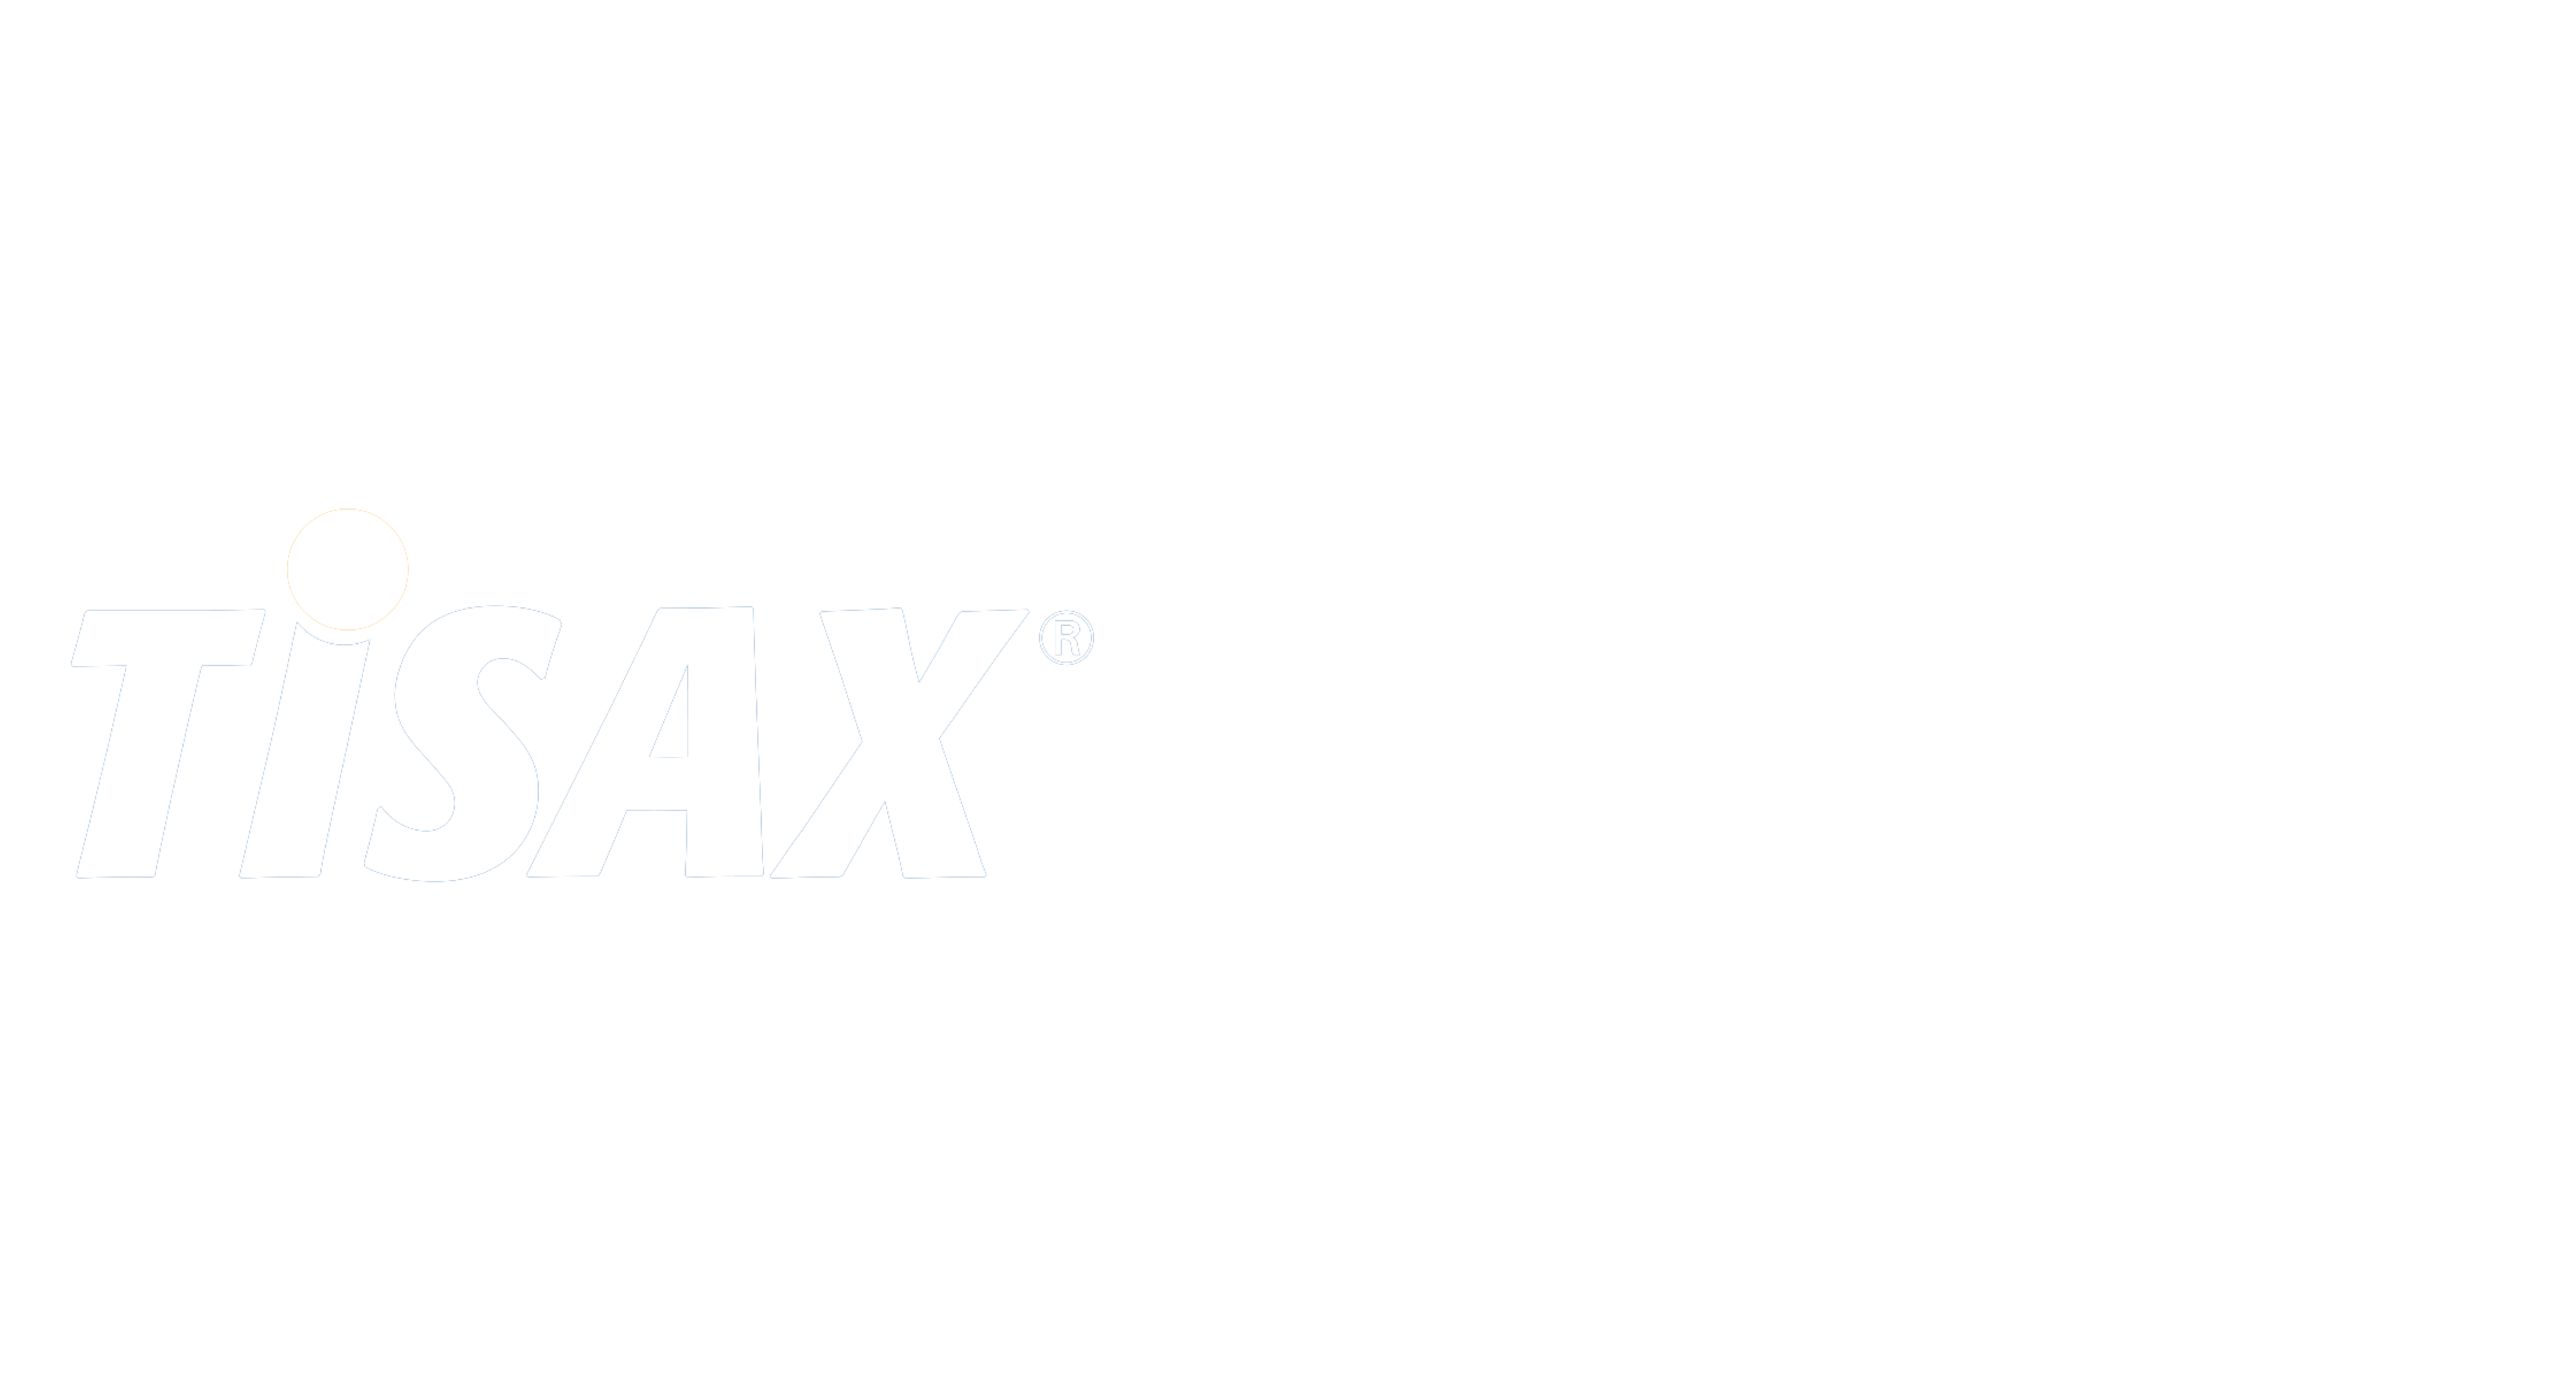 TISAX AL3 certified logo